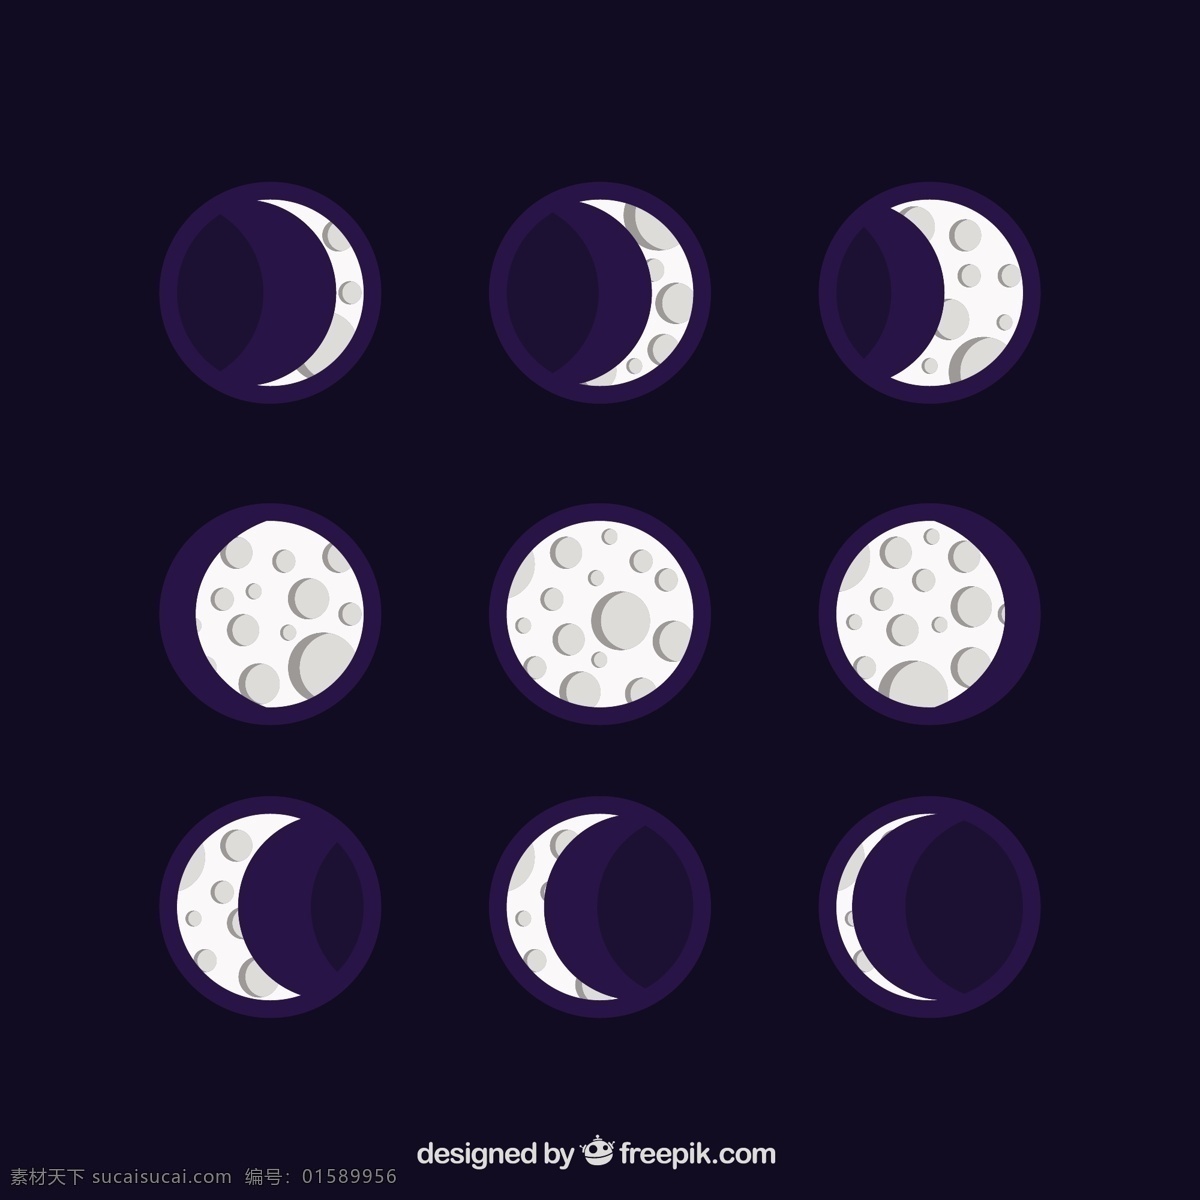 平面设计 中 好 农历 日历 天空 月亮 数字 时间 平面 夜晚 时间表 计划者 夜空 宇宙 年 季节 占星术 月 满月 周计划者 月相 尼斯